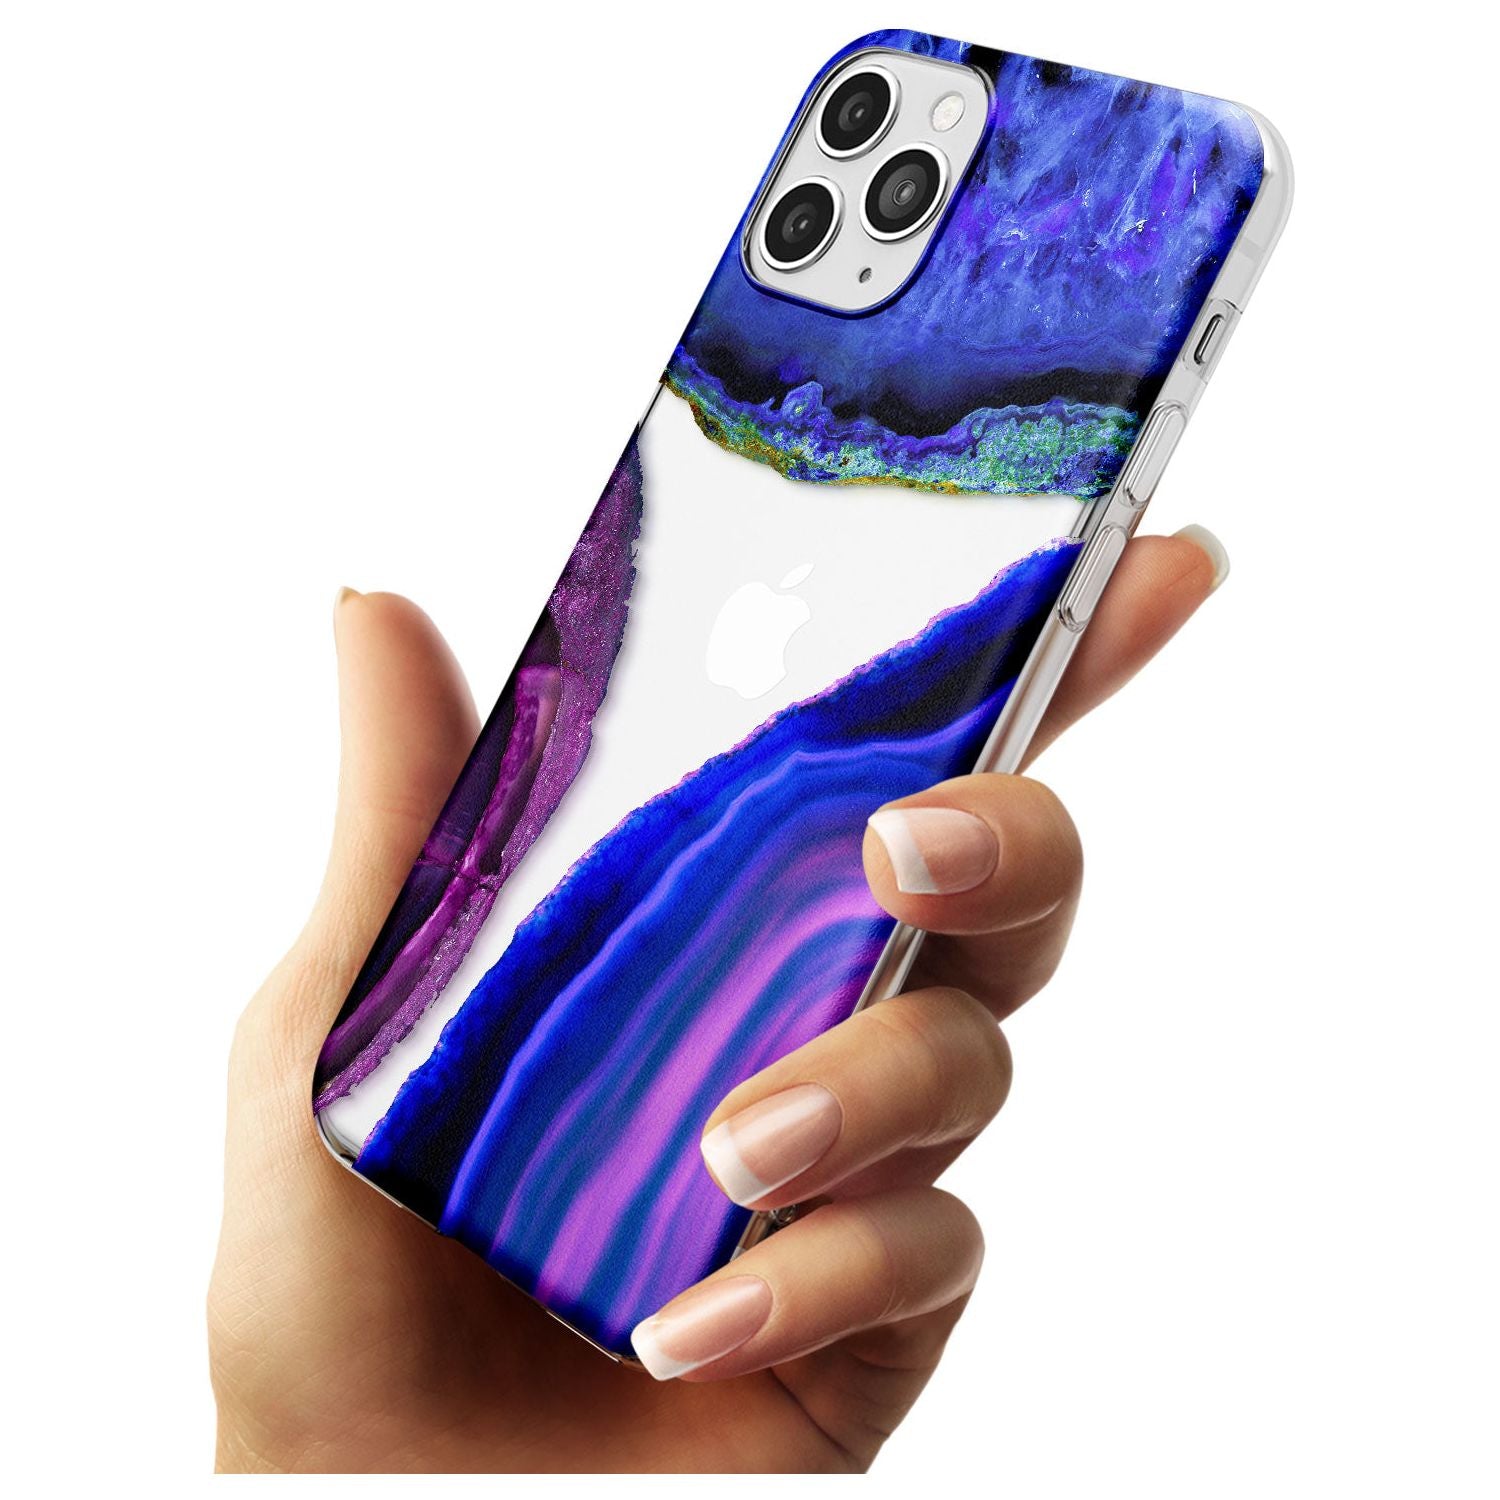 Purple & Blue Agate Gemstone Clear Design Slim TPU Phone Case for iPhone 11 Pro Max